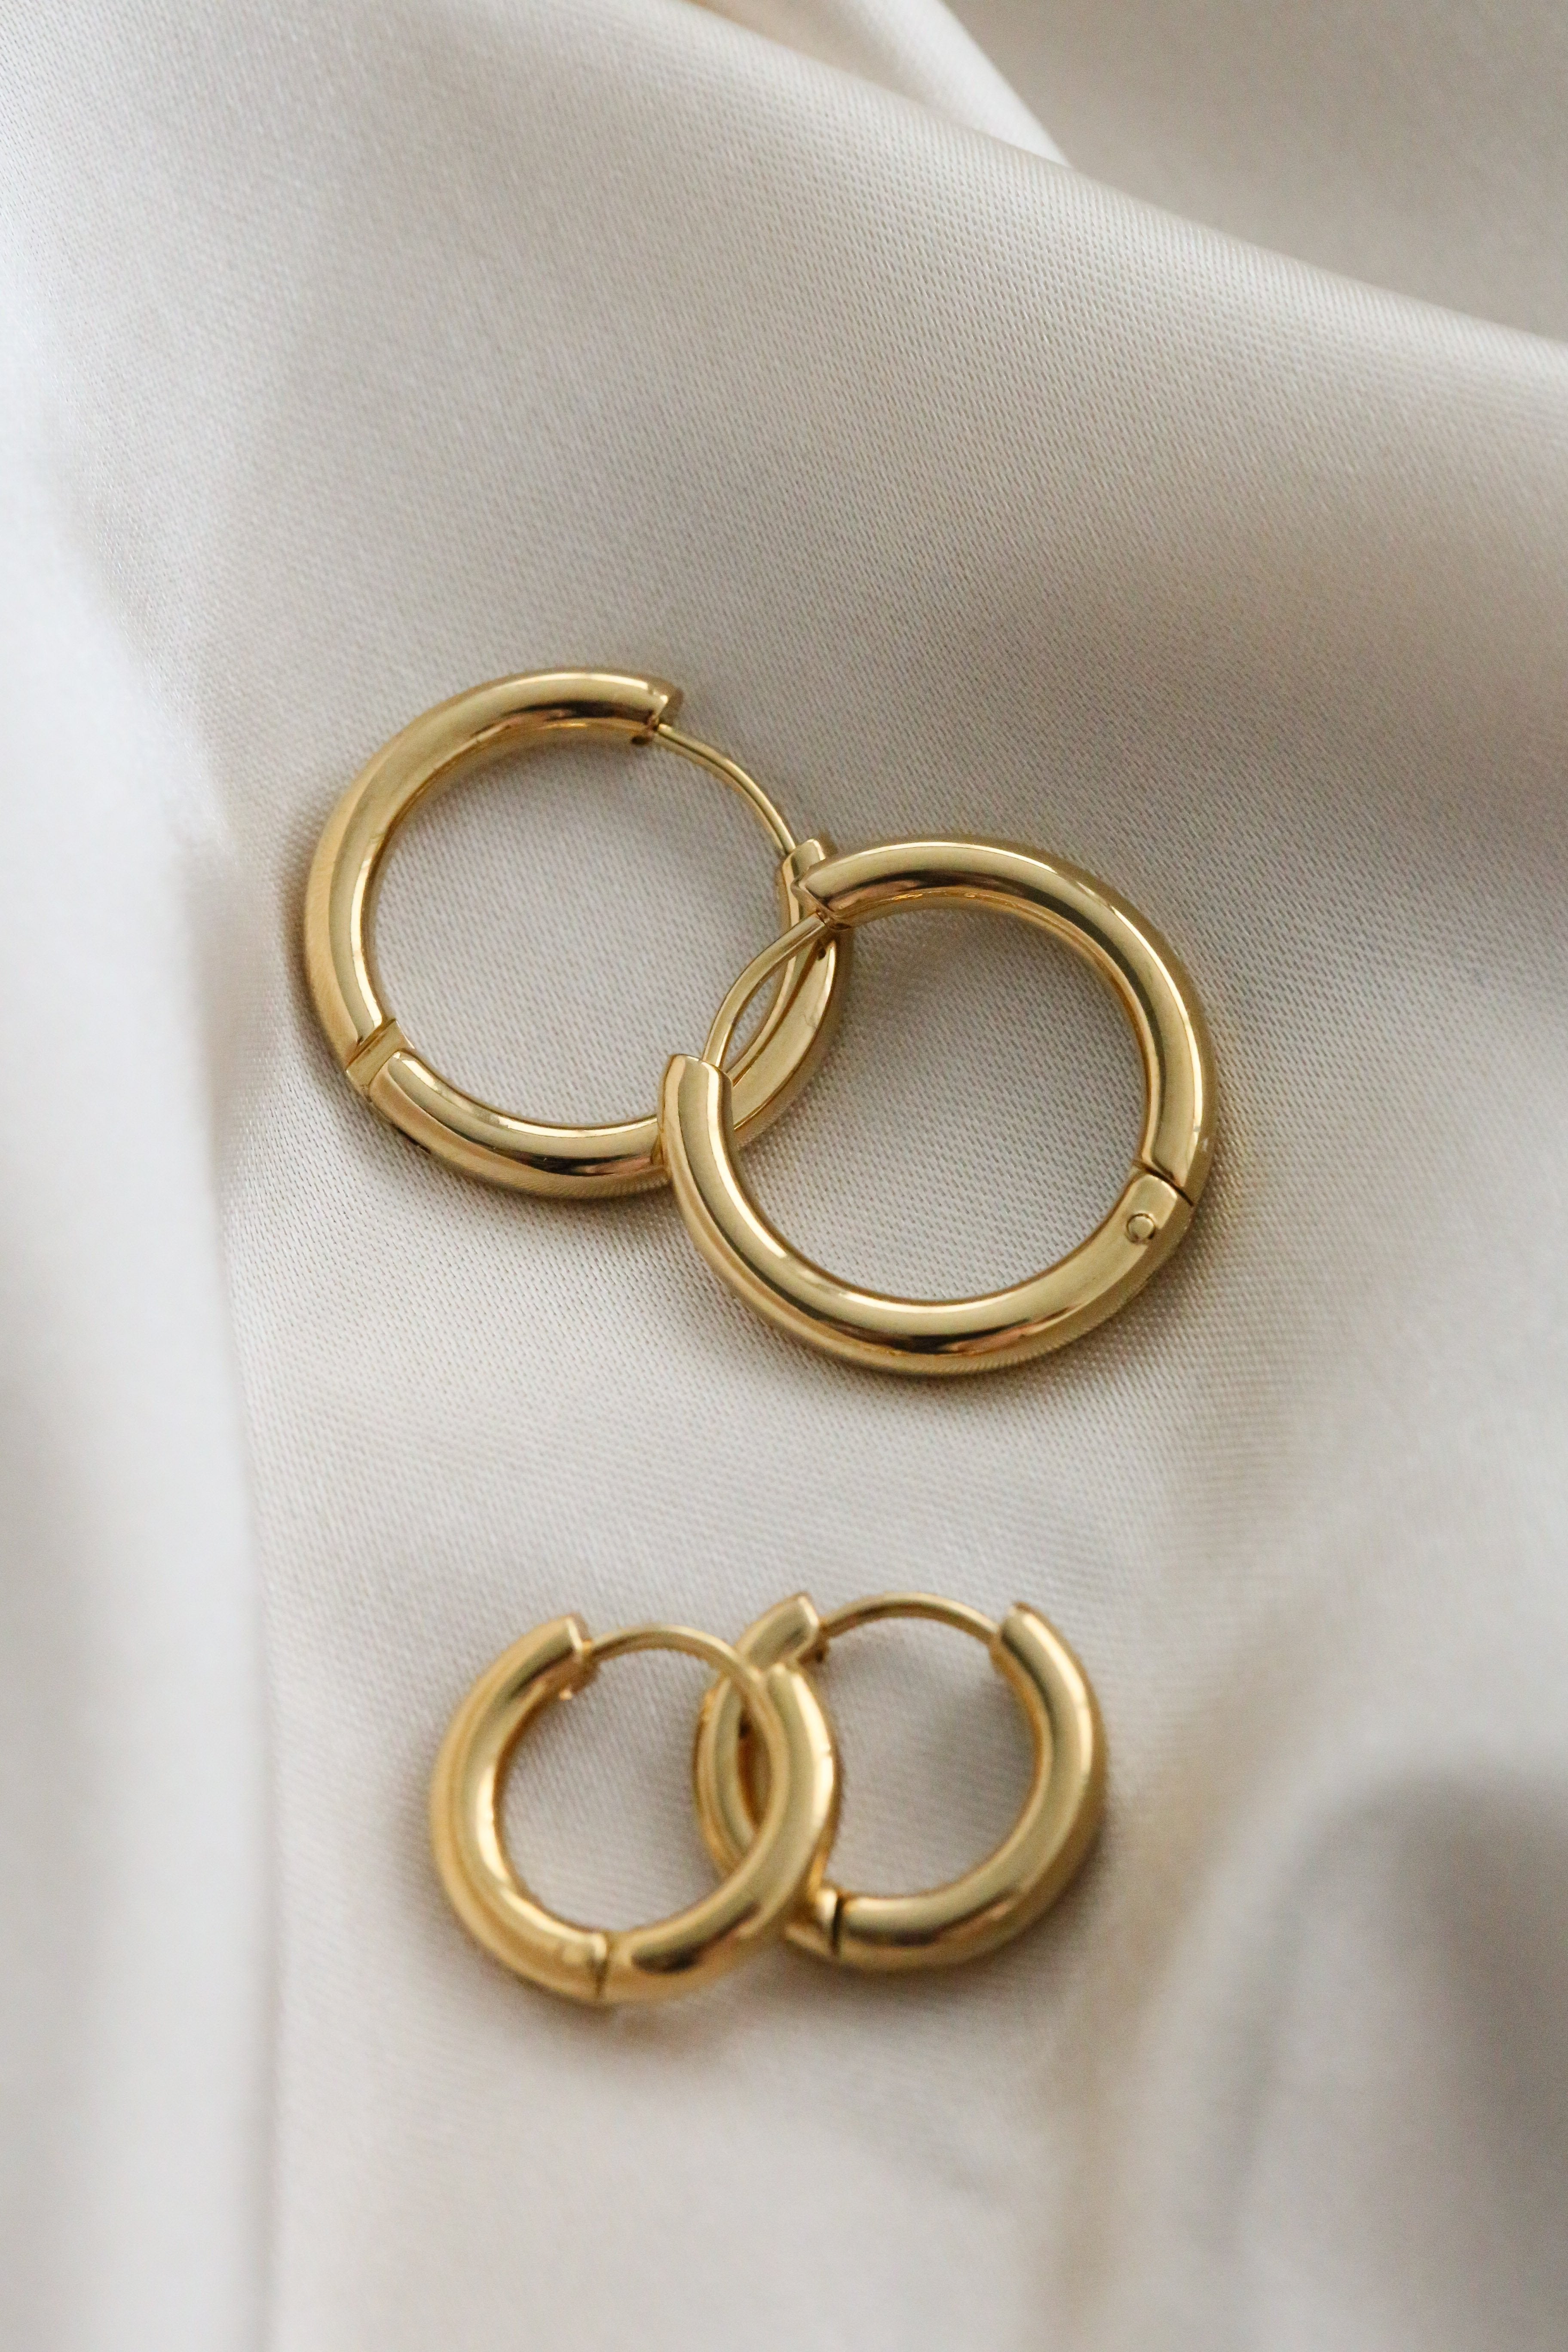 Perugia Hoop Earrings - Boutique Minimaliste has waterproof, durable, elegant and vintage inspired jewelry